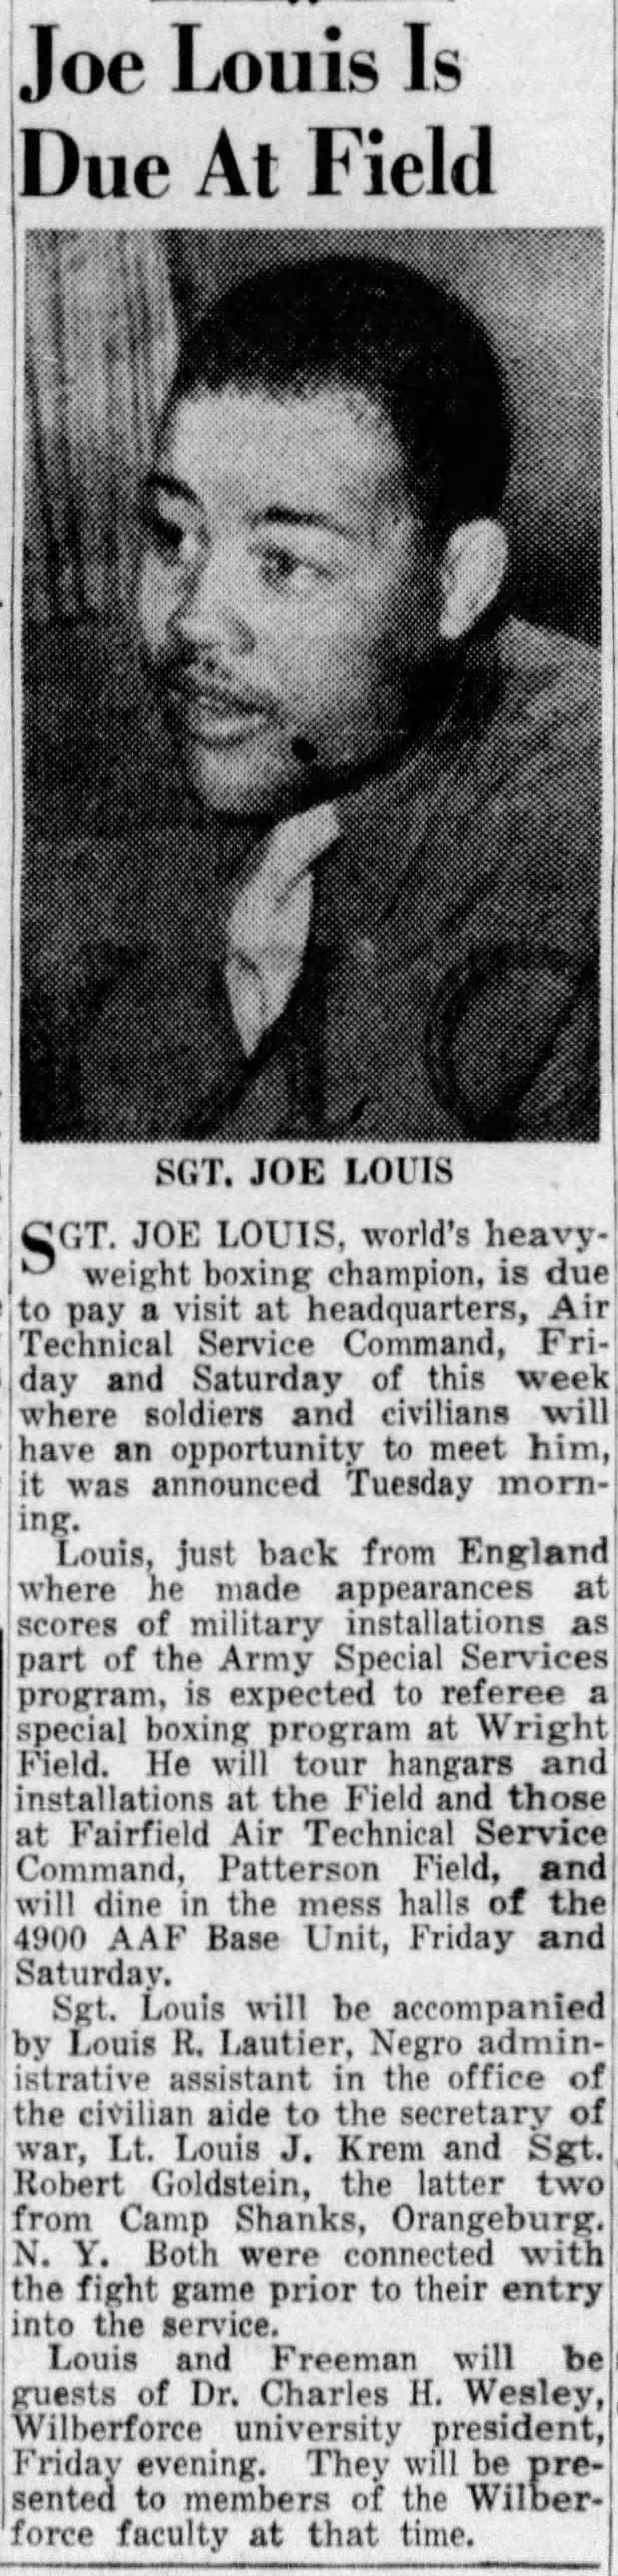 1945: Lautier staffs Joe Louis' visit to Air Technical Service Command (DC?)